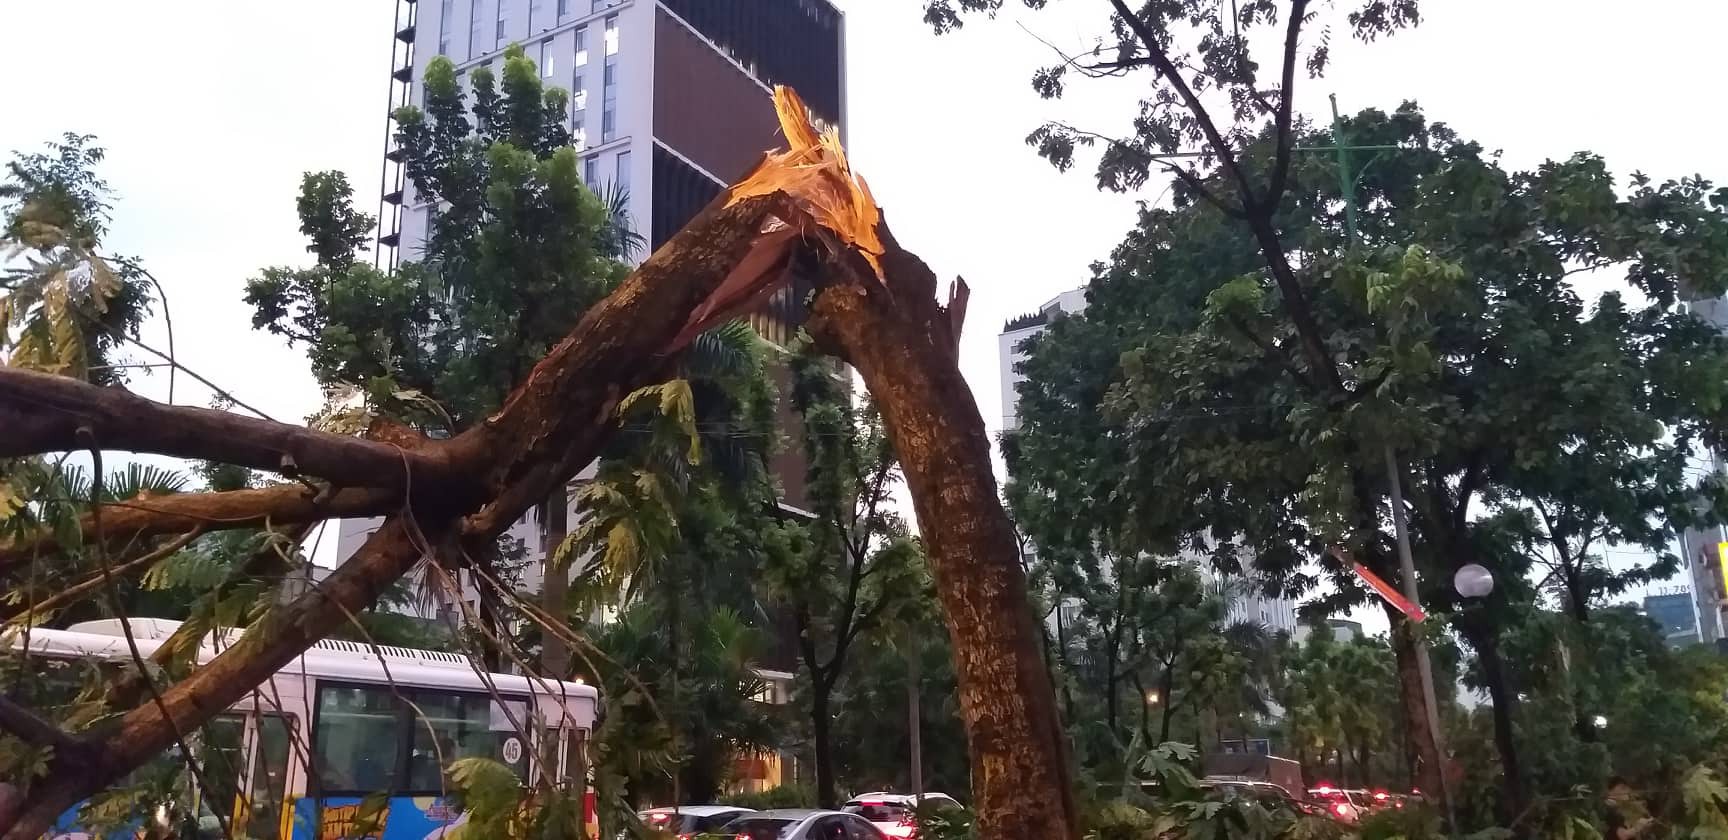 Bão số 4 đang di chuyển vào đất liền, Hà Nội mưa gió khủng khiếp, đã có 1 người chết do cây xanh đè trúng-7